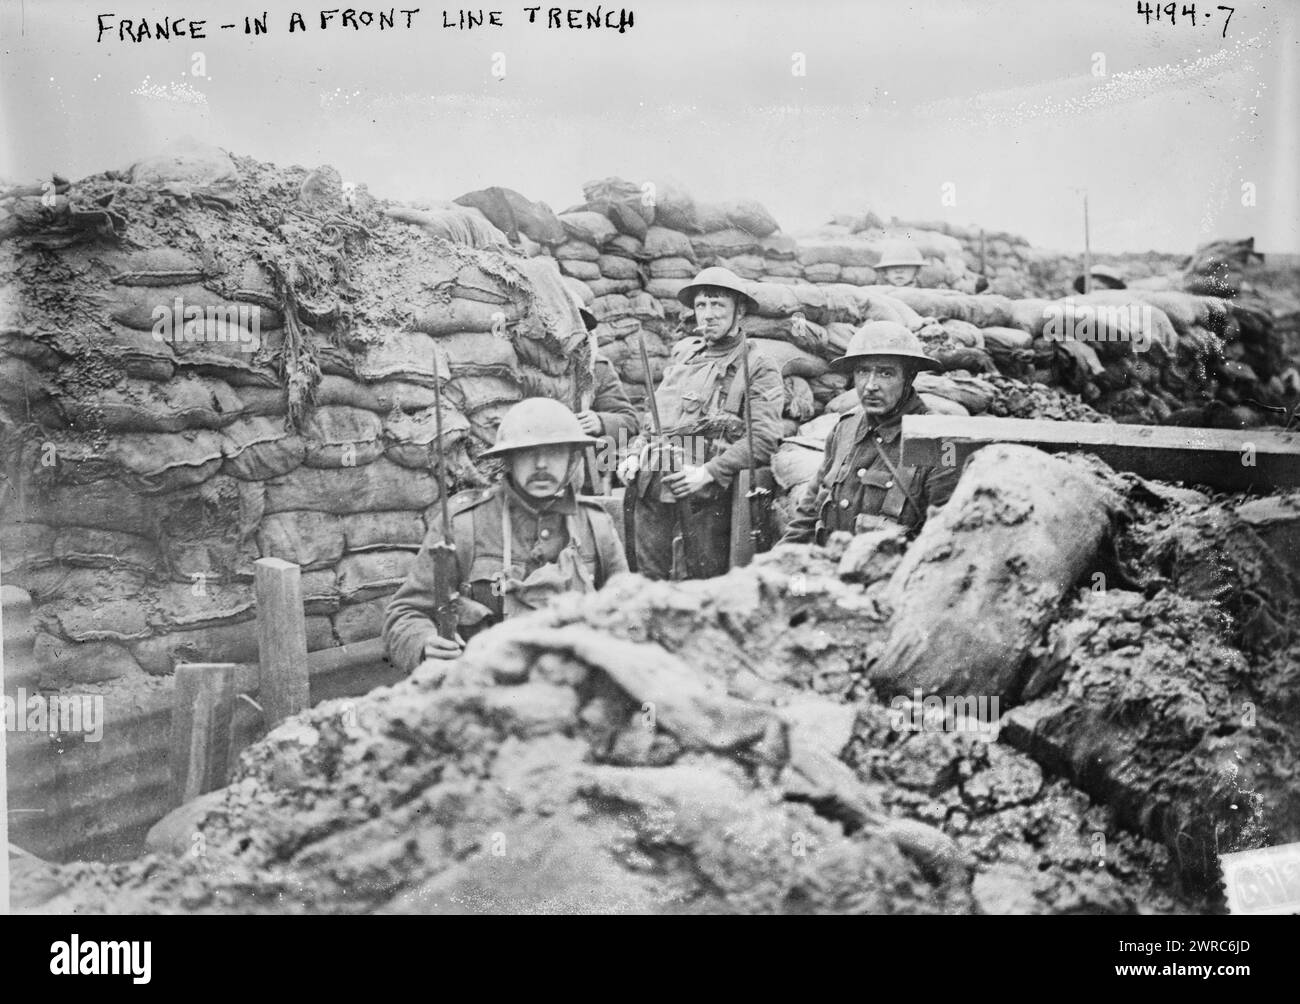 France - dans une tranchée de première ligne, la photographie montre des troupes britanniques dans une tranchée en France pendant la première Guerre mondiale, 1917, Guerre mondiale, 1914-1918, négatifs en verre, 1 négatif : verre Banque D'Images